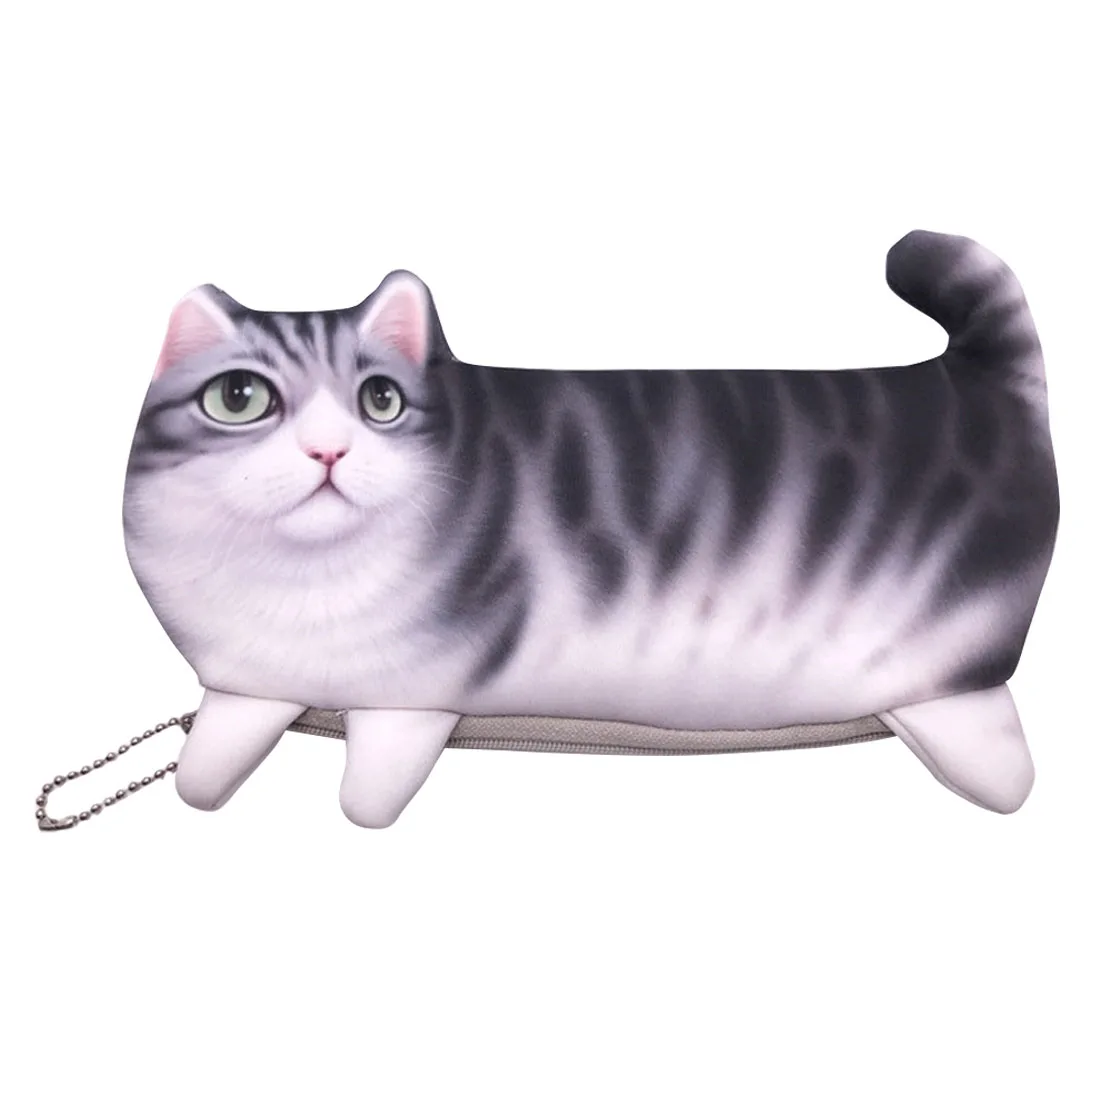 Мода Kawaii Новинка моделирование мультфильм кошка креативный пенал для карандашей милая мягкая ткань школьные канцелярские ручки сумка подарки - Цвет: Black Back Cat